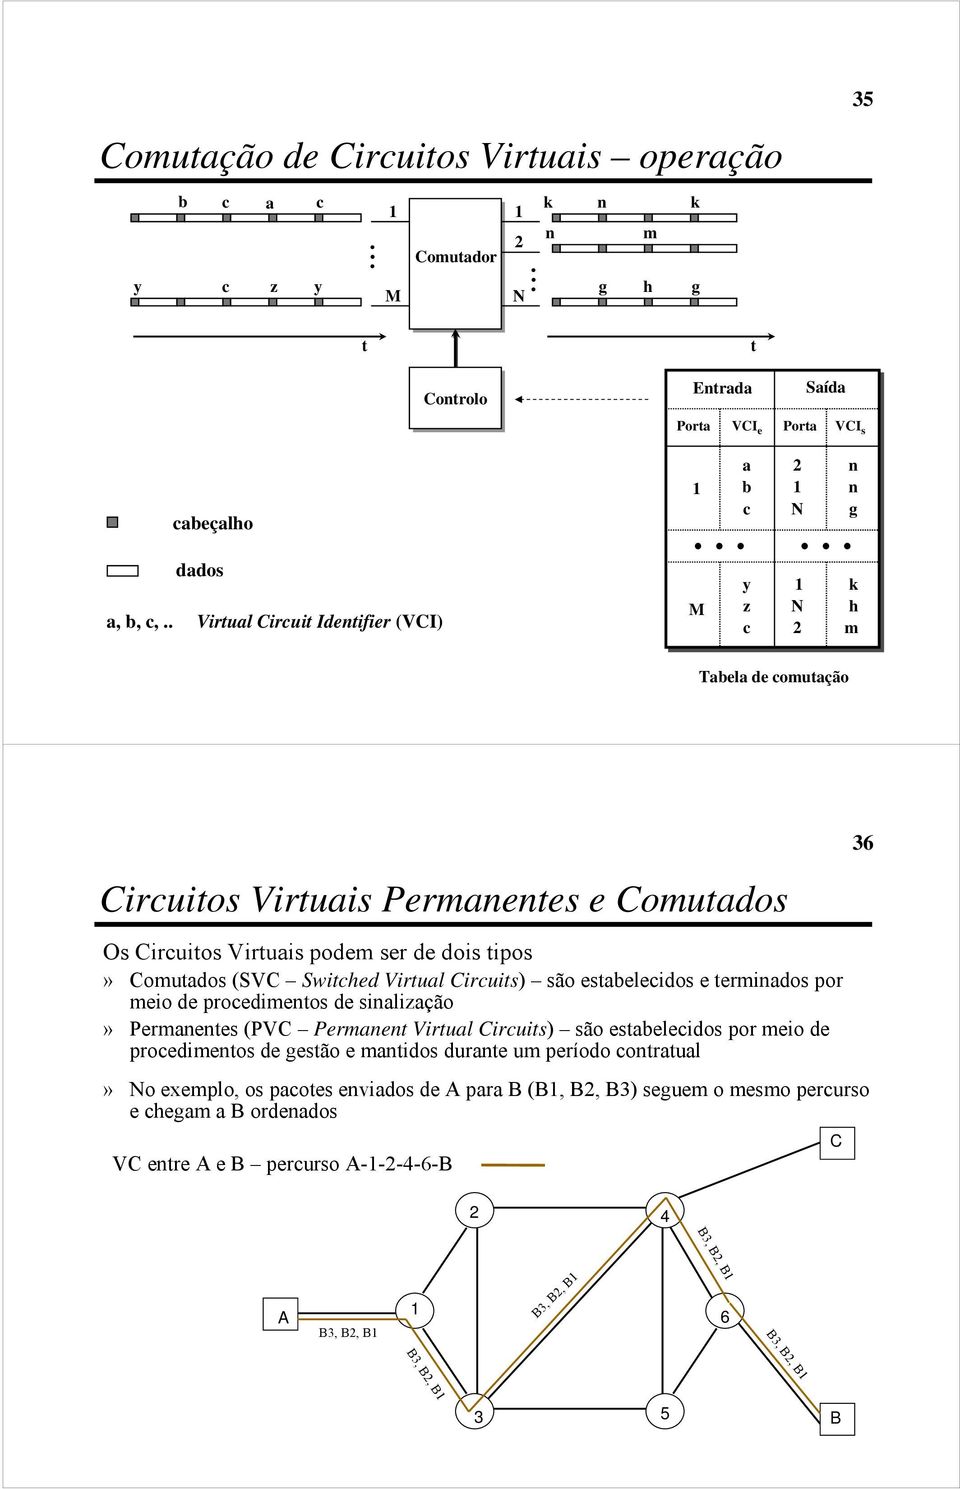 Circuits) são estabelecidos e terminados por meio de procedimentos de sinalização» Permanentes (PVC Permanent Virtual Circuits) são estabelecidos por meio de procedimentos de gestão e mantidos